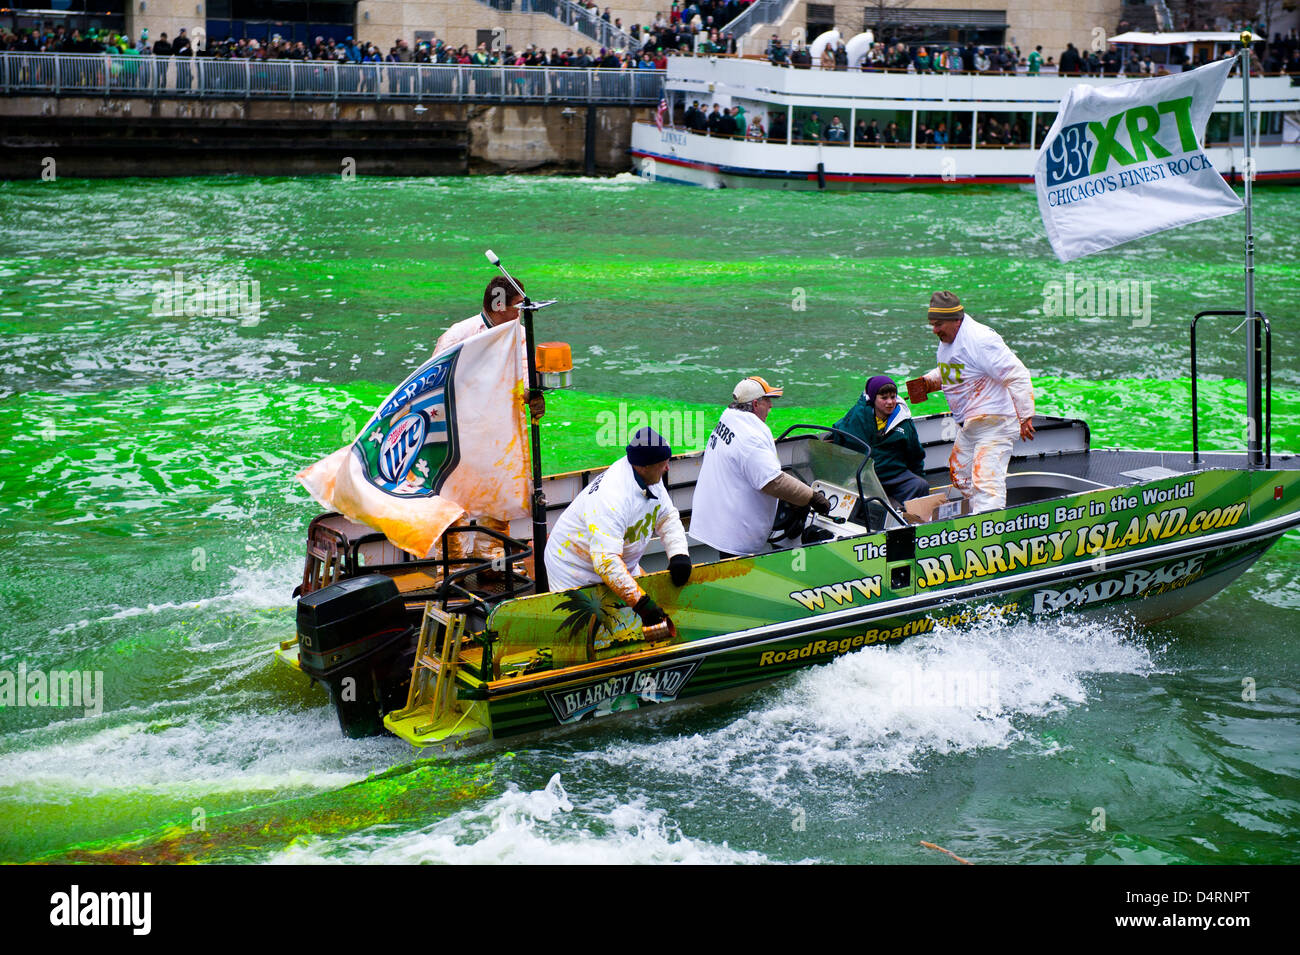 Für St. Patricks Day in Chicago, Vereinigte Staaten von Amerika, auf Samstag, 16. März 2013 wird den Chicago River grün gefärbt. Stockfoto